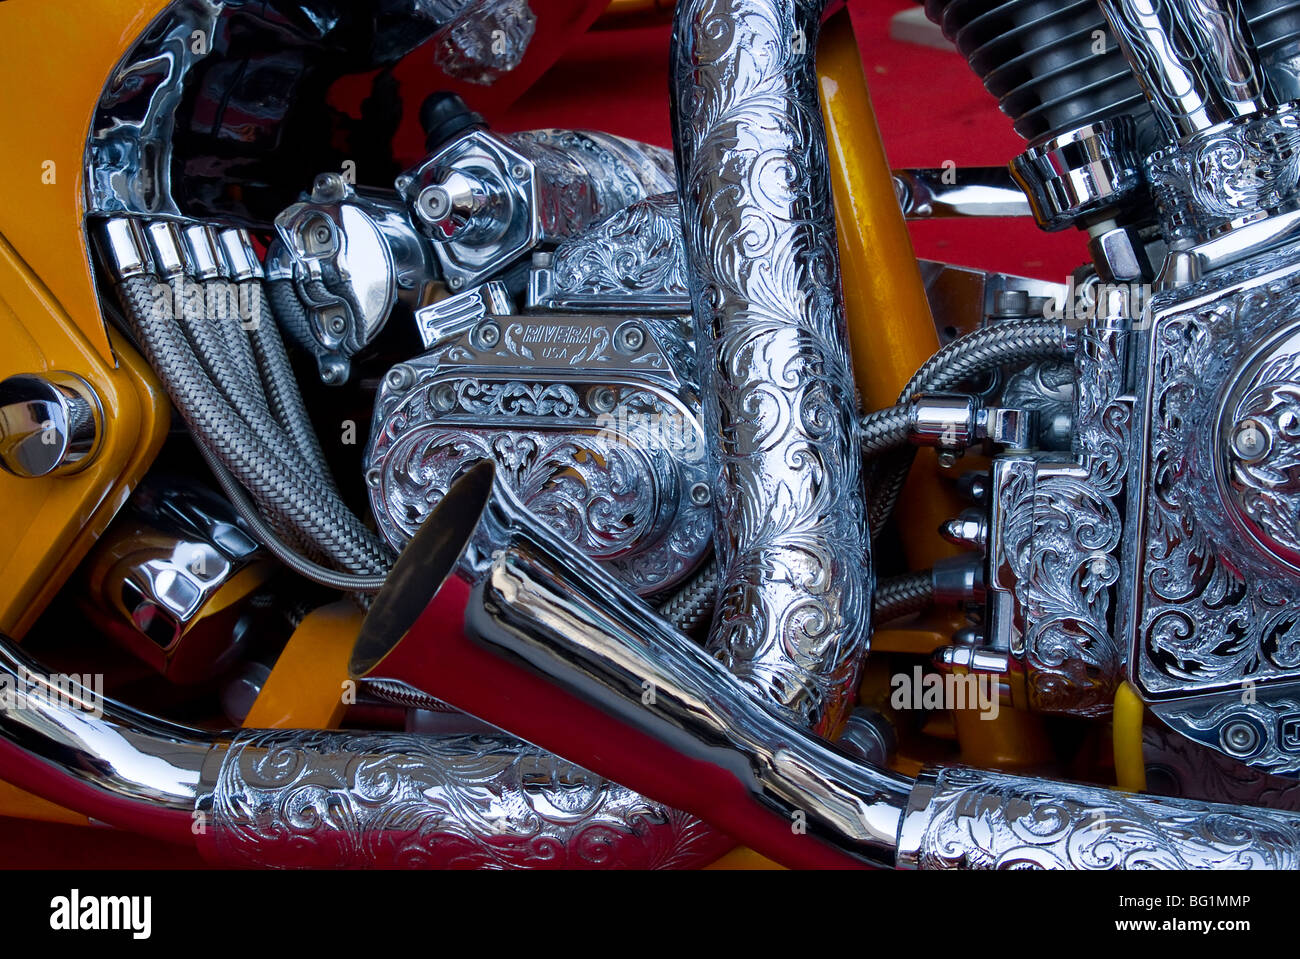 Motor-Detail der speziell angefertigten, klassischen Harley-Davidson Motorrad mit einer Fülle von verzierten Chrom. Stockfoto